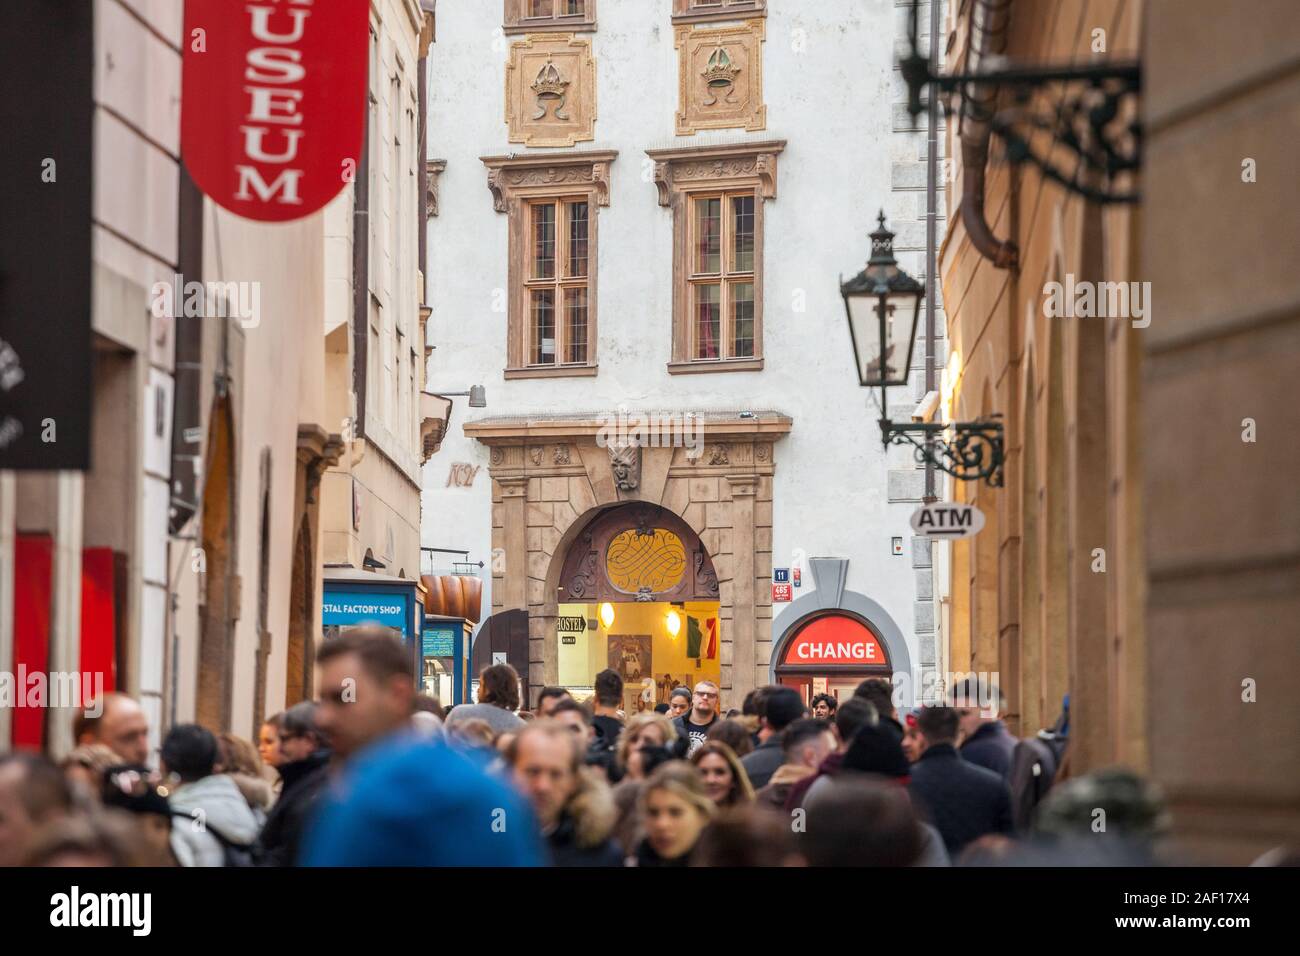 Prag, Tschechien - NOVEMBER 3, 2019: Masse von Touristen vorbei und hetzen in einer engen Straße überbevölkert in der mittelalterlichen Altstadt von Wien Stockfoto